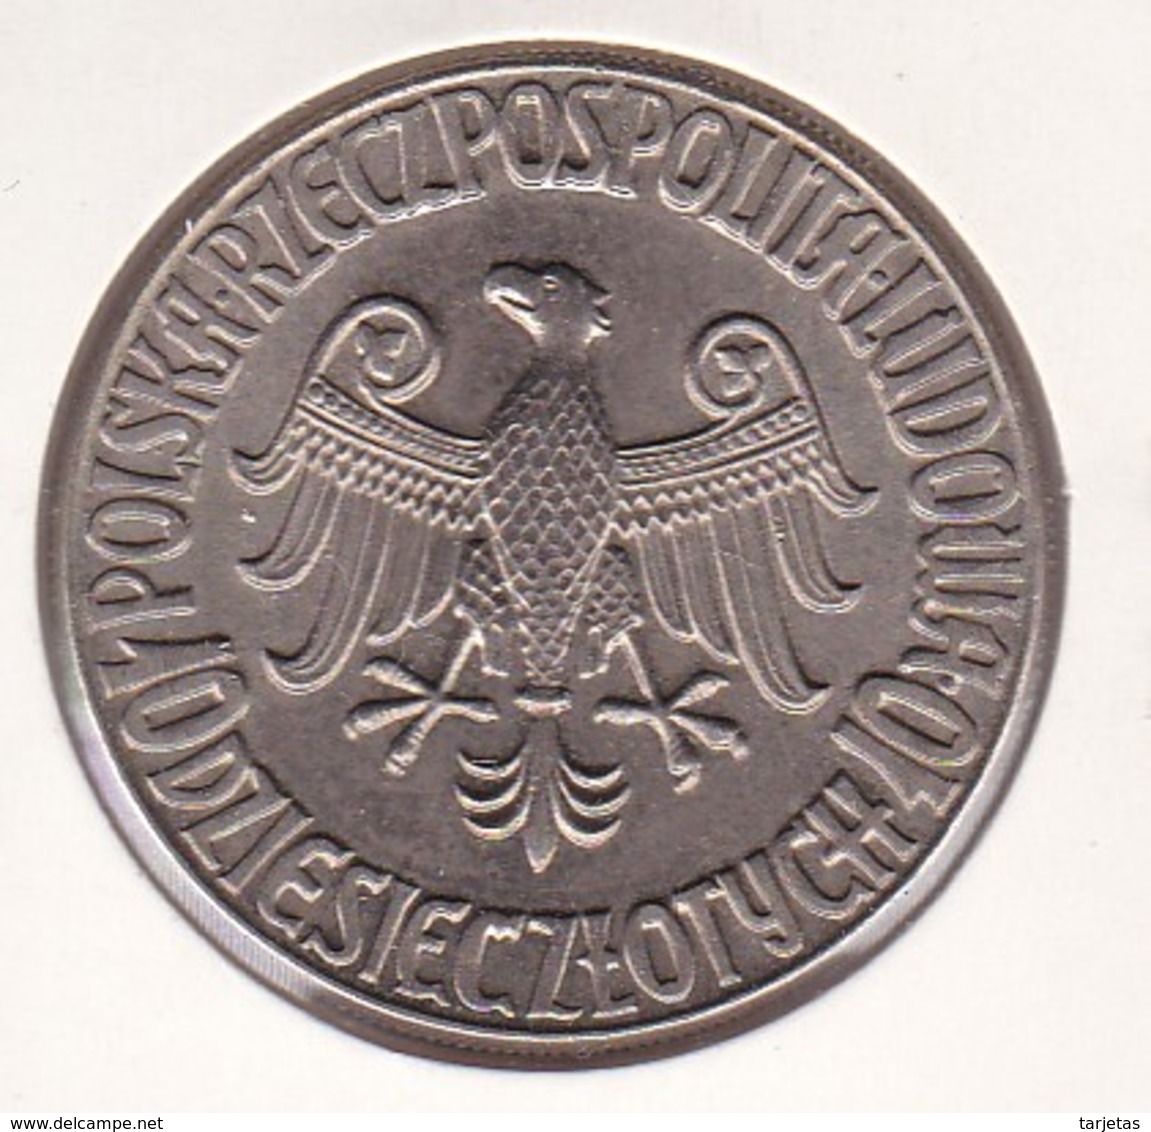 MONEDA DE POLONIA DE 10 ZLOTYCH DEL AÑO 1964  (COIN) PROBA (PRUEBA) - Polonia